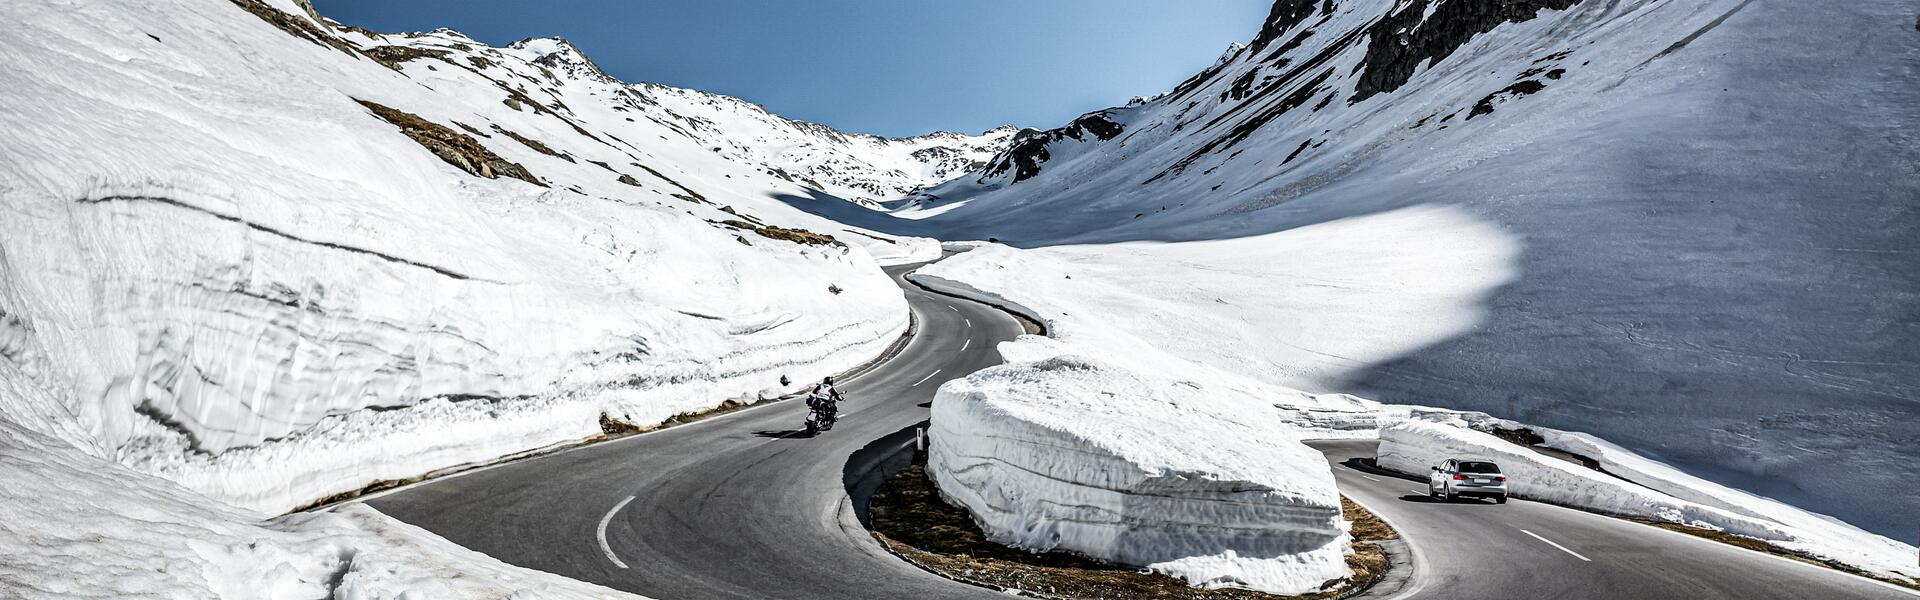 alpine road ötztal | © Alexander Maria Lohmann